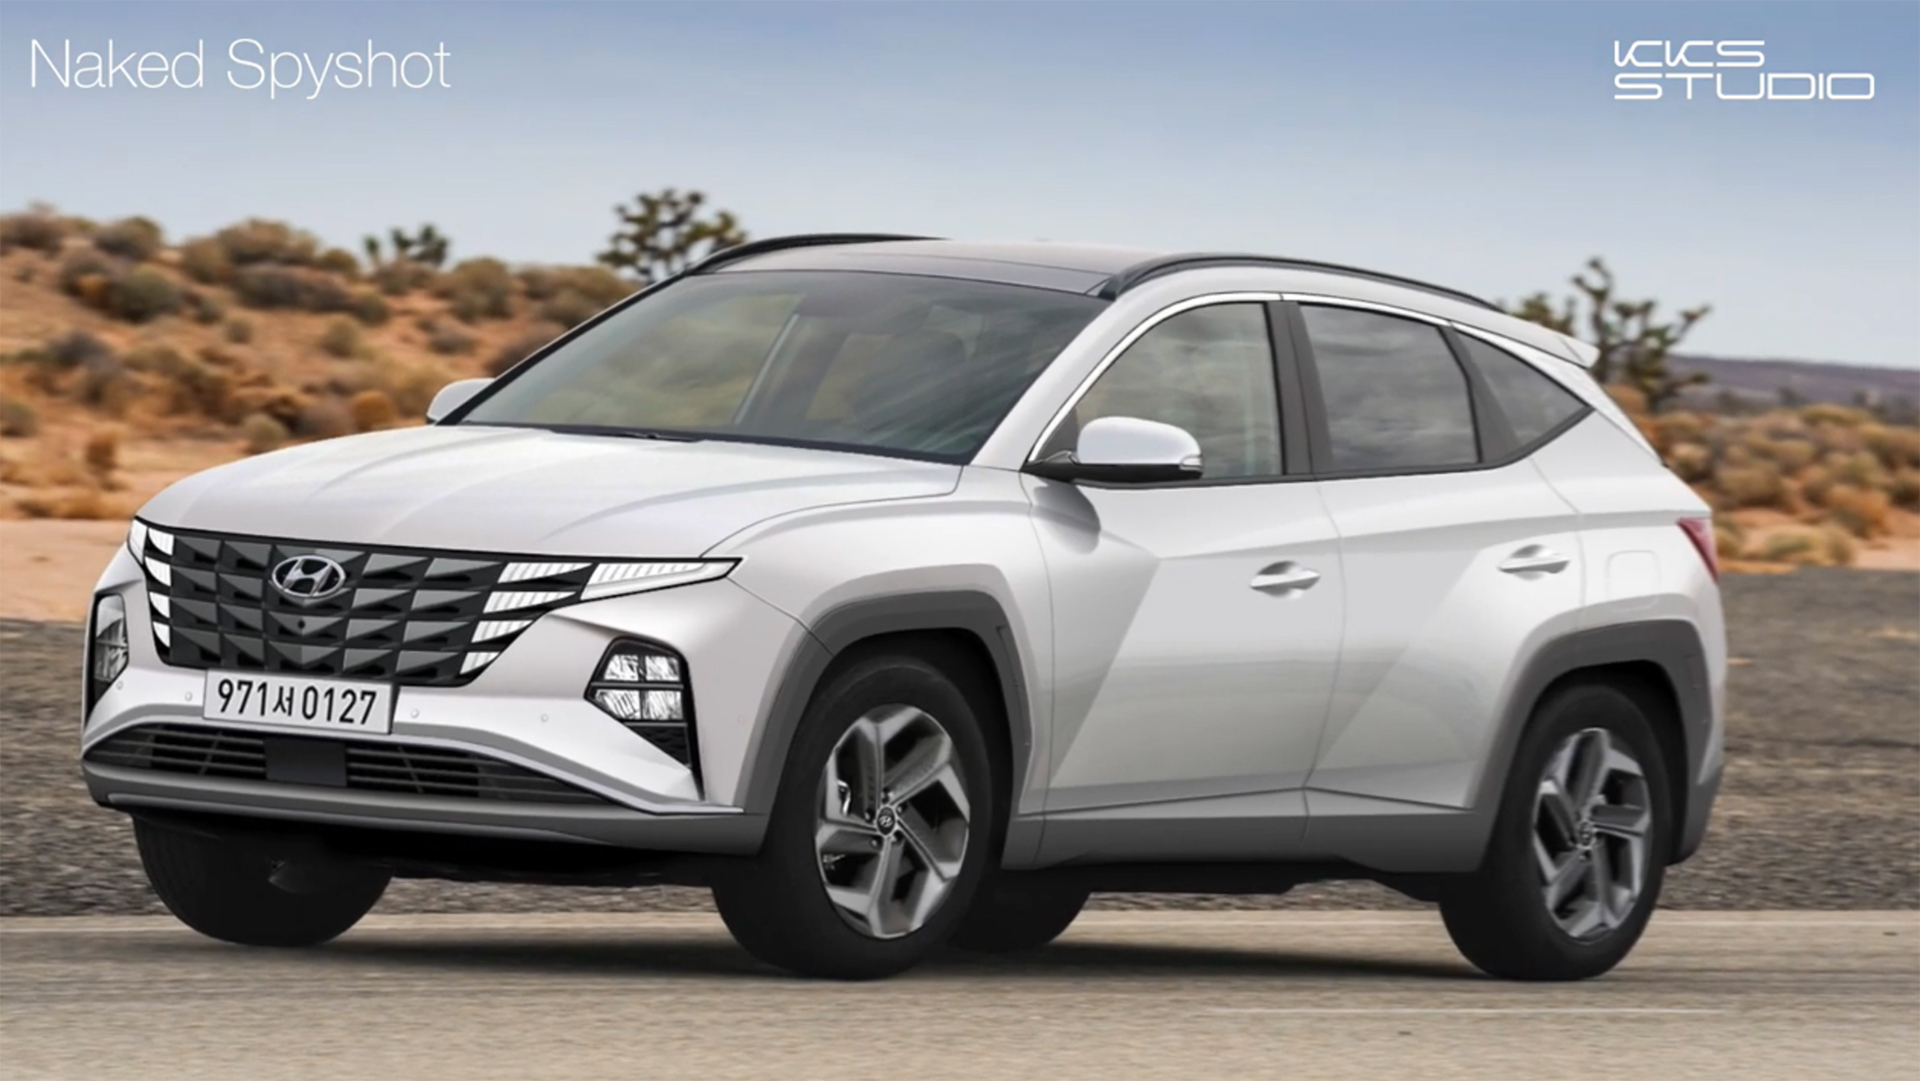 Hyundai Tucson 2021 lộ thông số kỹ thuật trước ngày ra mắt